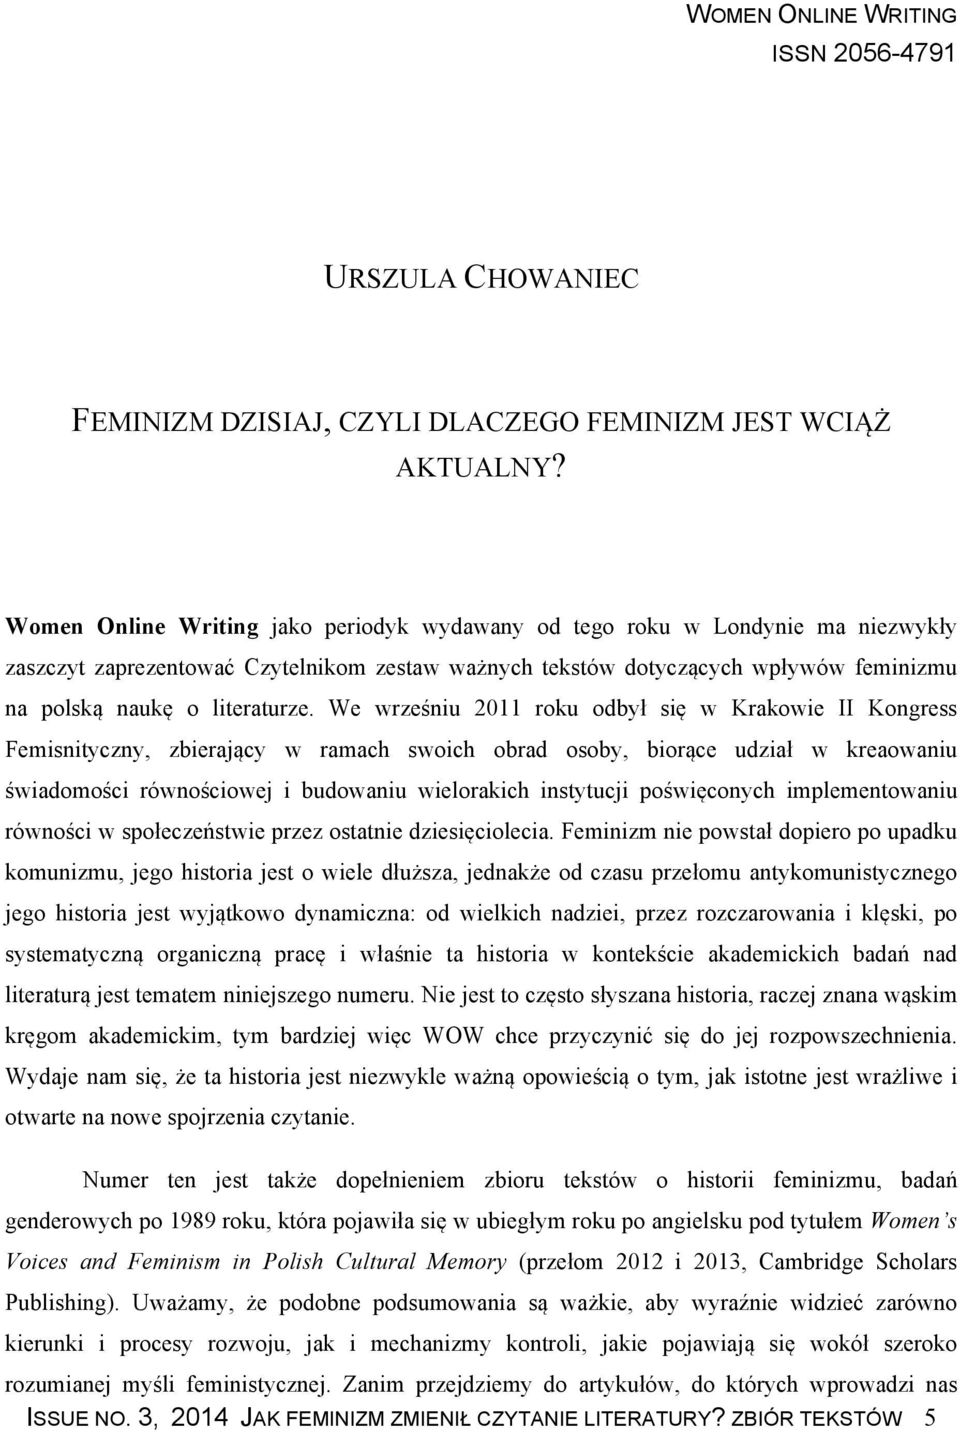 We wrześniu 2011 roku odbył się w Krakowie II Kongress Femisnityczny, zbierający w ramach swoich obrad osoby, biorące udział w kreaowaniu świadomości równościowej i budowaniu wielorakich instytucji